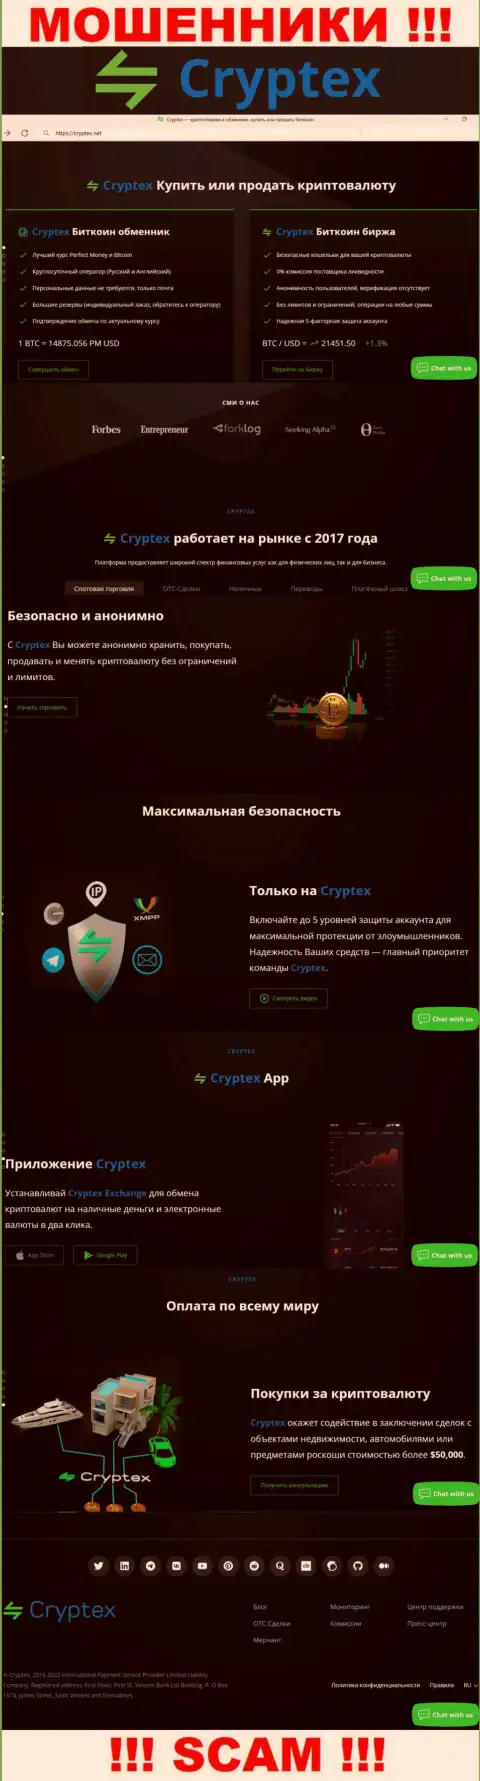 Скрин официального сайта незаконно действующей компании Криптекс Нет